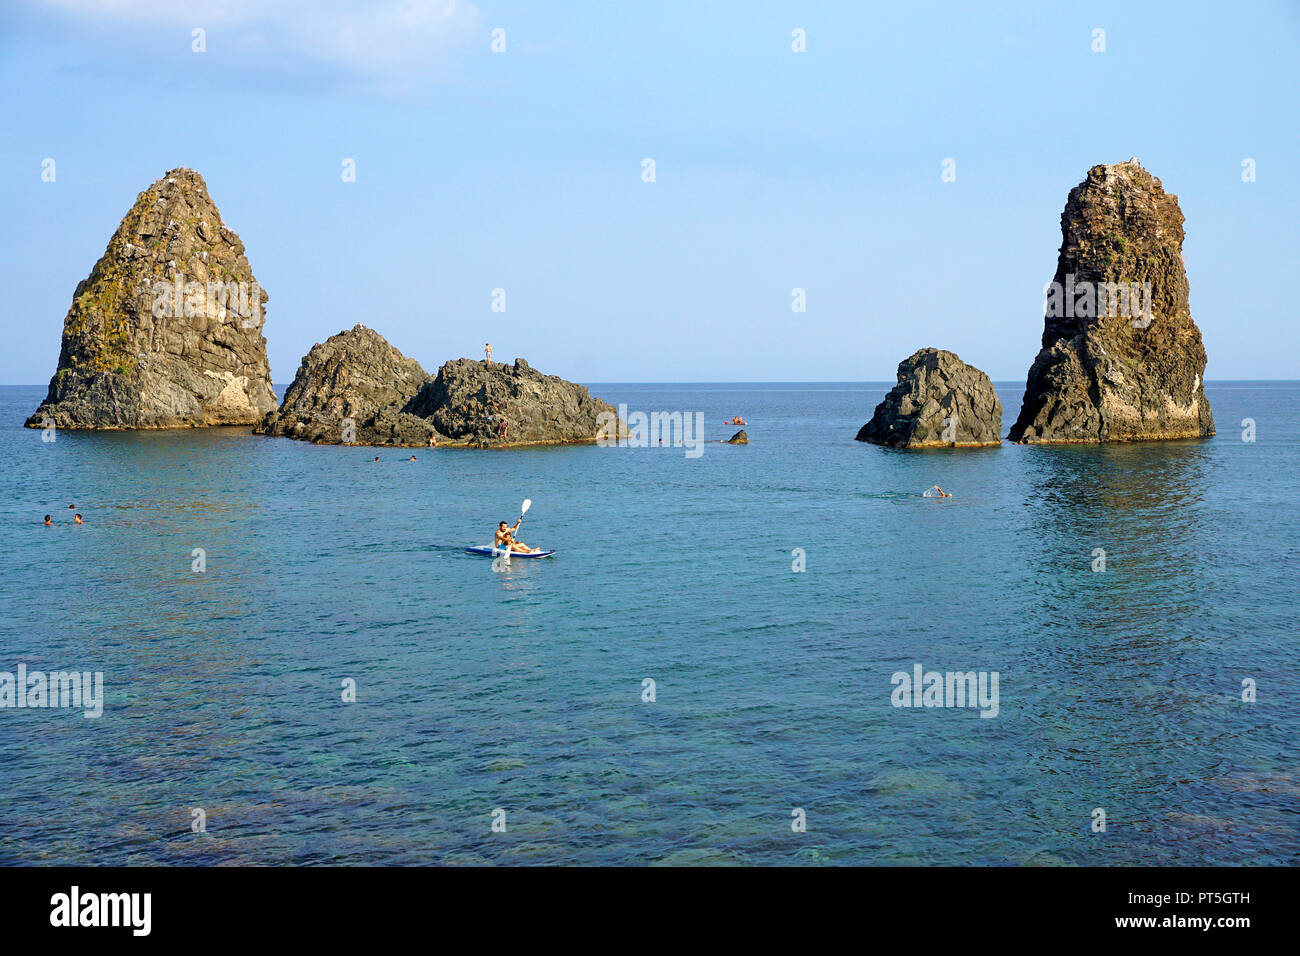 Le isole dei ciclopi al villaggio di pescatori di Aci Trezza, comune di Aci Castello, Catania, Sicilia, Italia Foto Stock